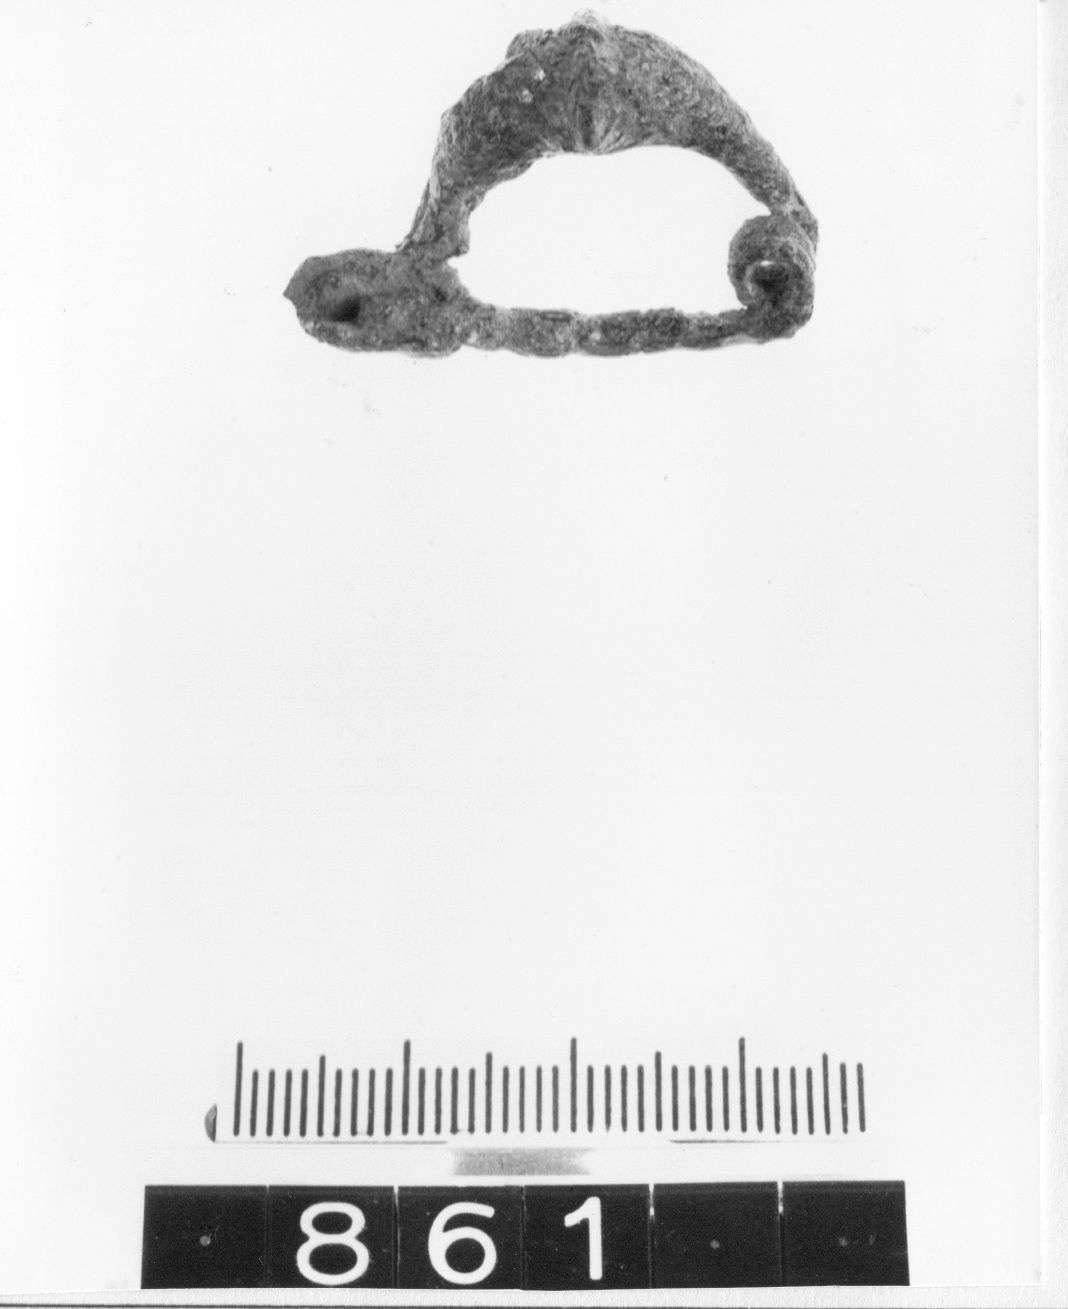 fibula, ad arco romboidale - cultura ligure (fine/ primo quarto VIII-VII a.C)